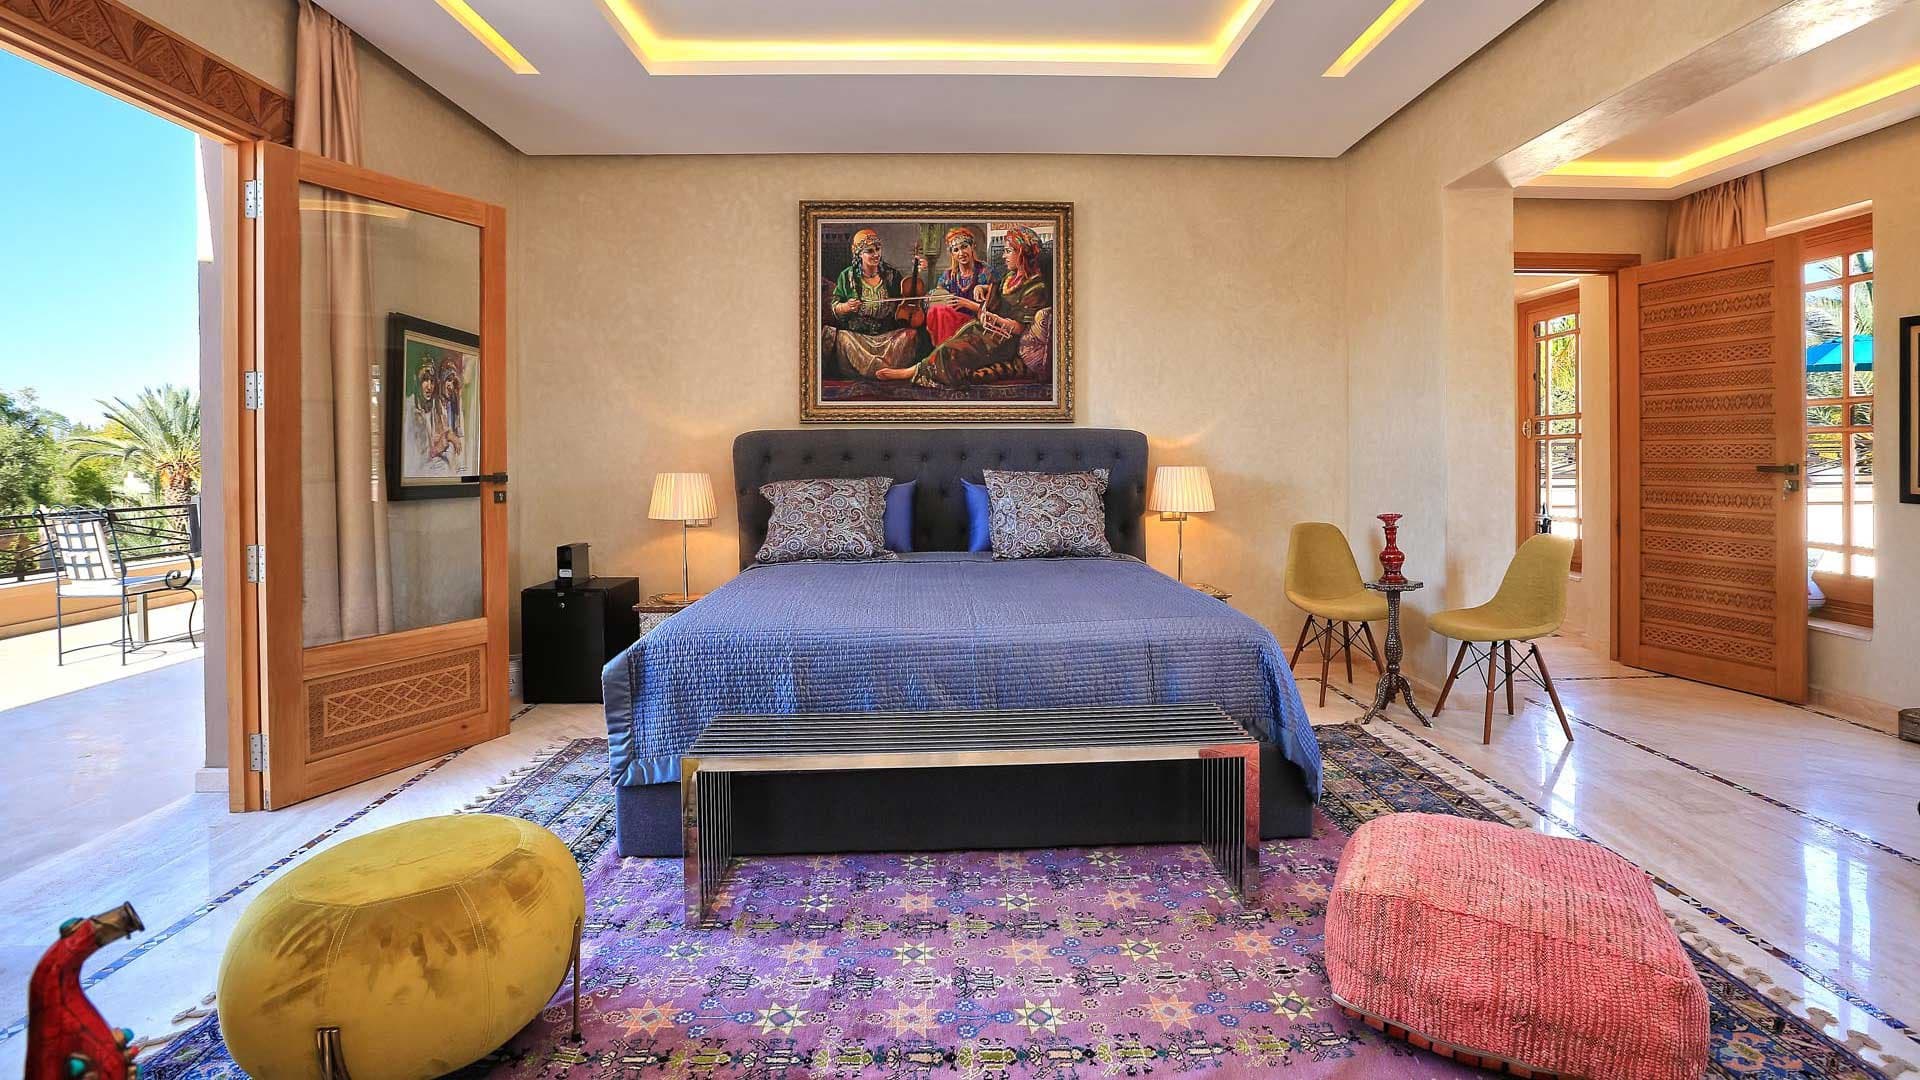 8 Bedroom Villa For Sale Marrakech Lp08726 1fd1fa43fa7d0200.jpg